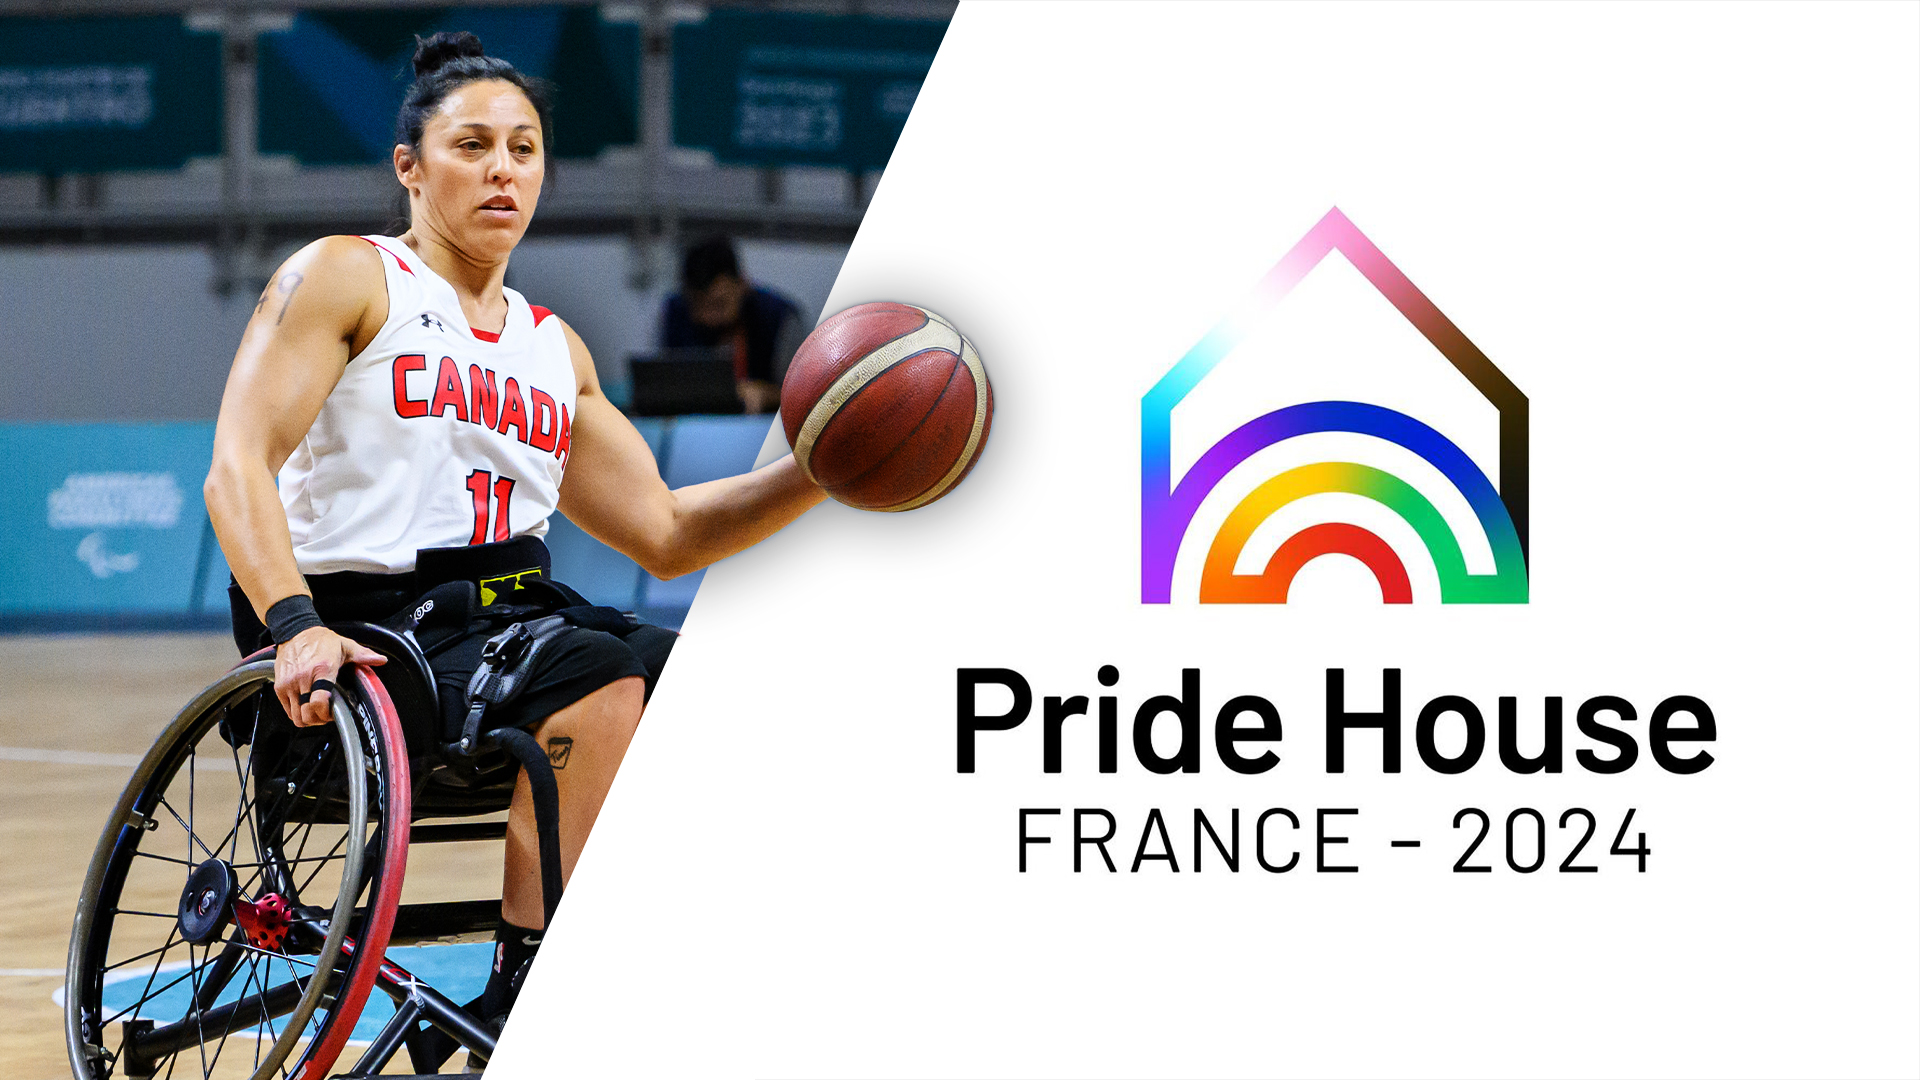 Graphique de la joueuse canadienne de basketball en fauteuil roulant Tara Llanes avec un logo de la Maison de la Fierté Paris 2024.